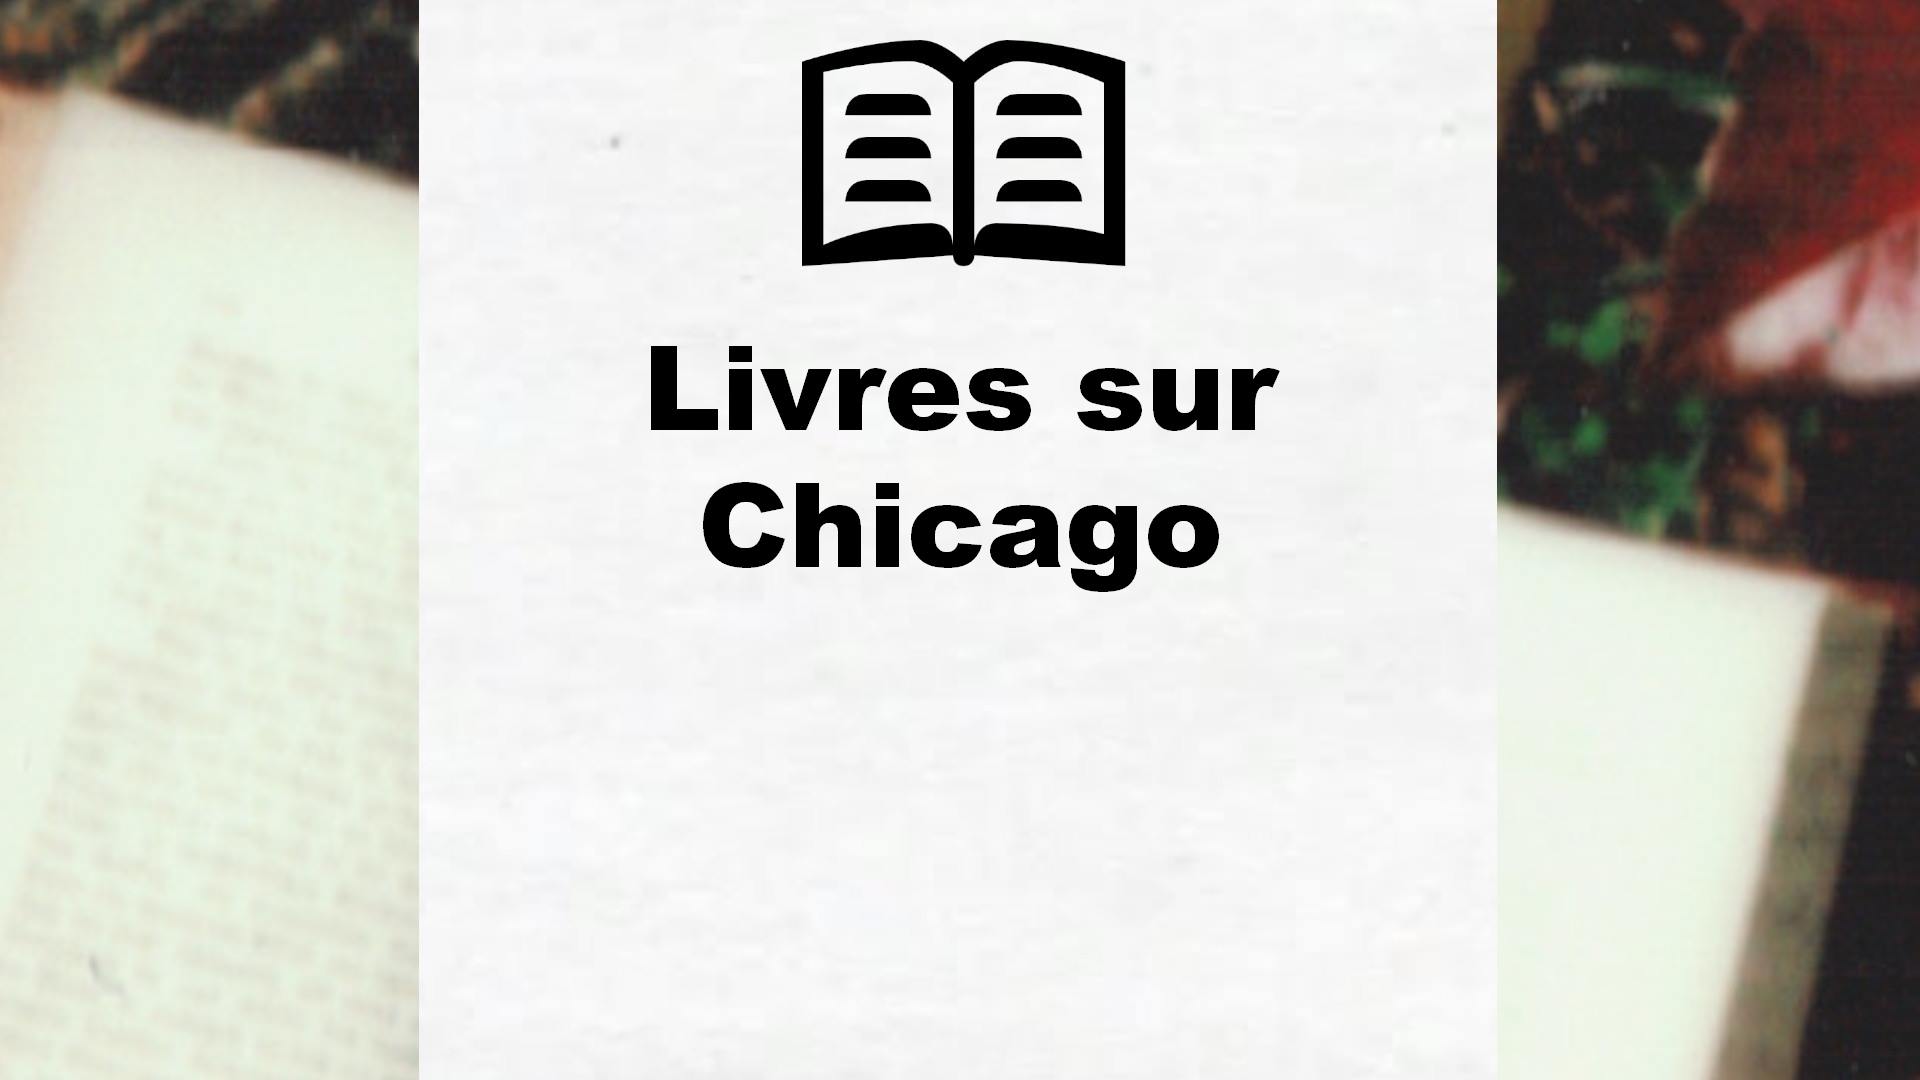 Livres sur Chicago